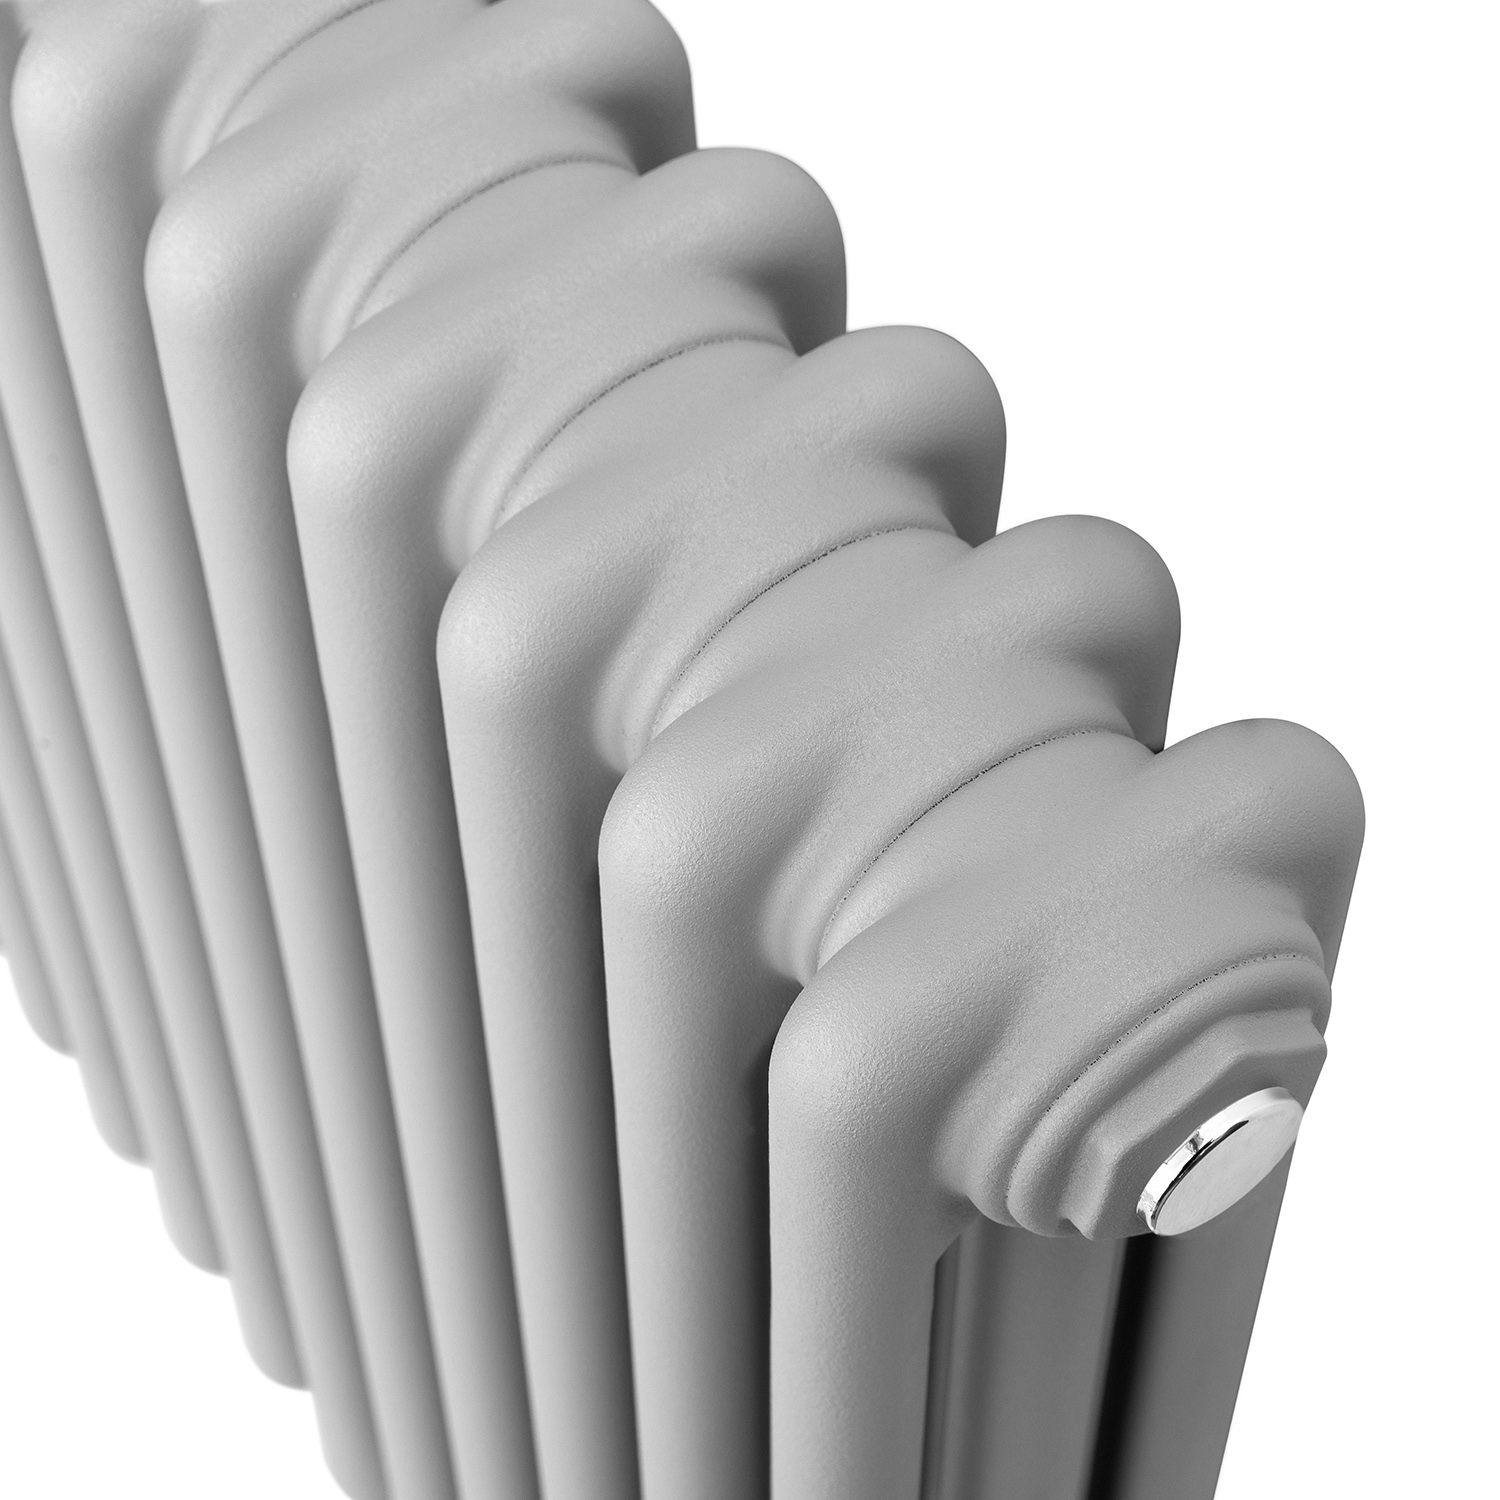 Light Grey column radiator close up